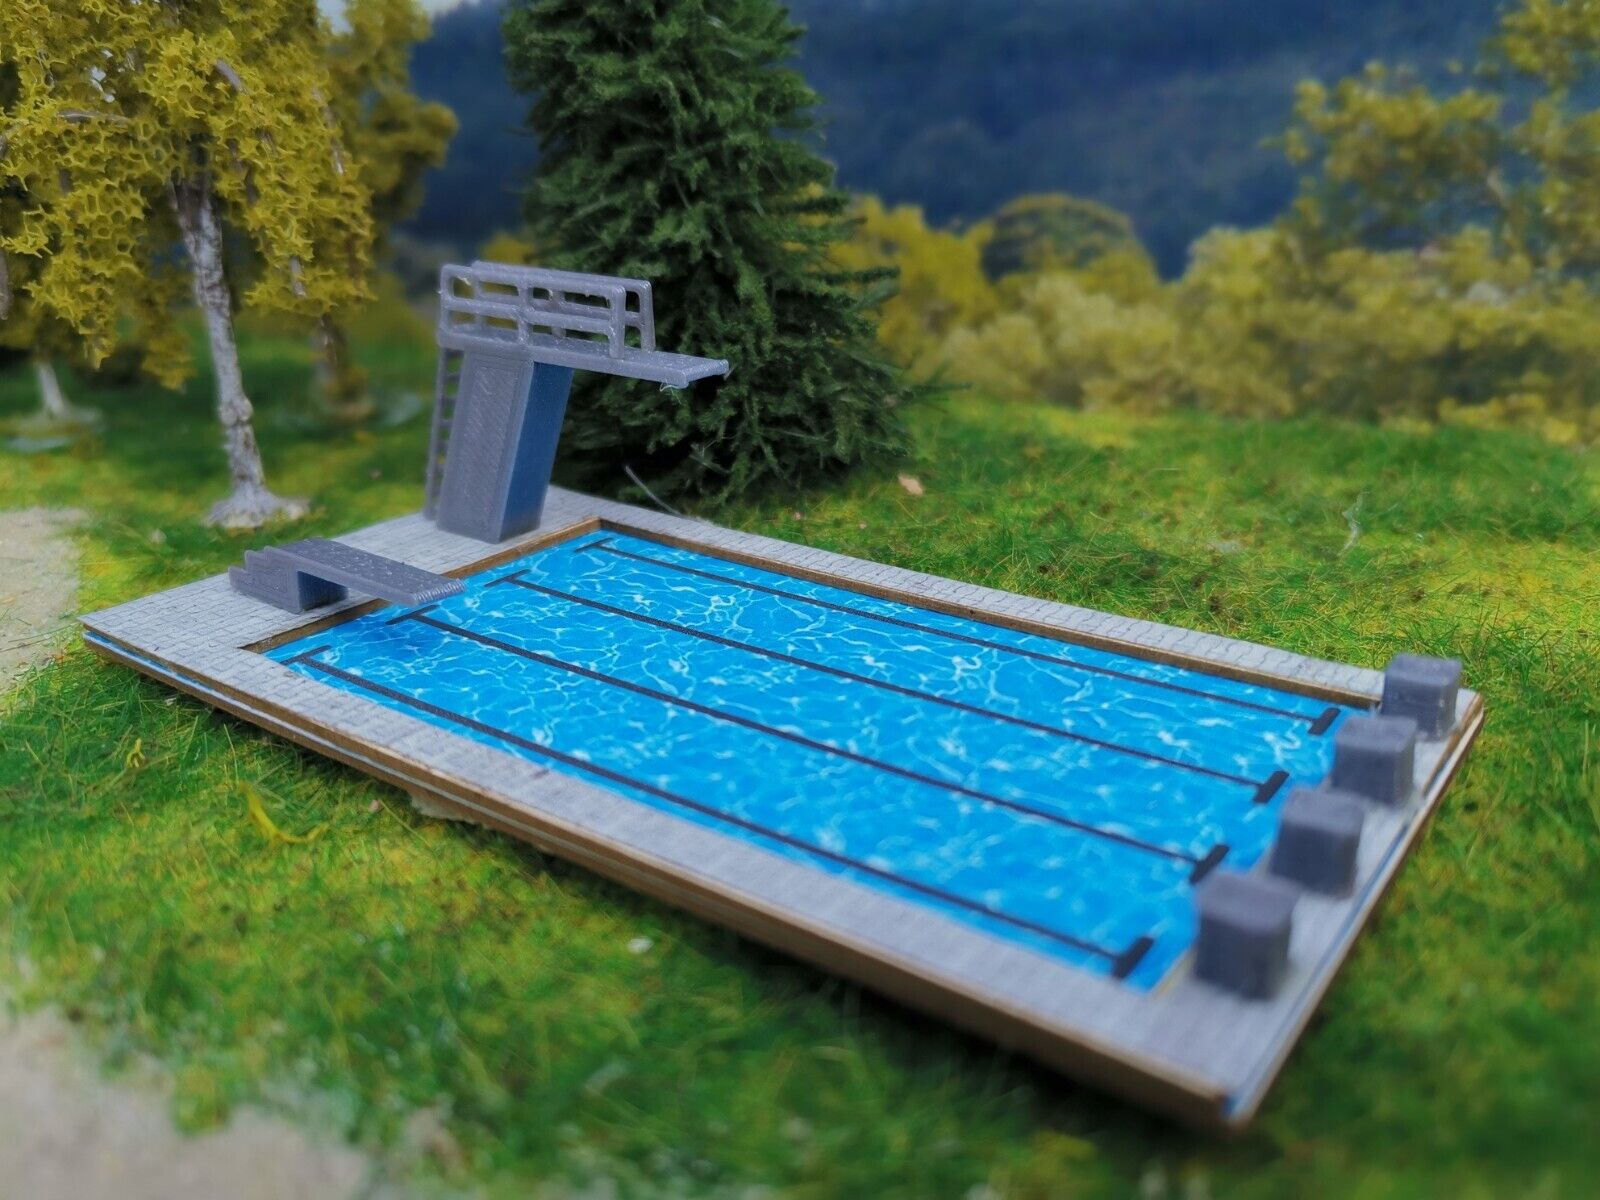 Schwimmbad Spur Z | Bausatz | Freibad mit Sprungturm |1:220